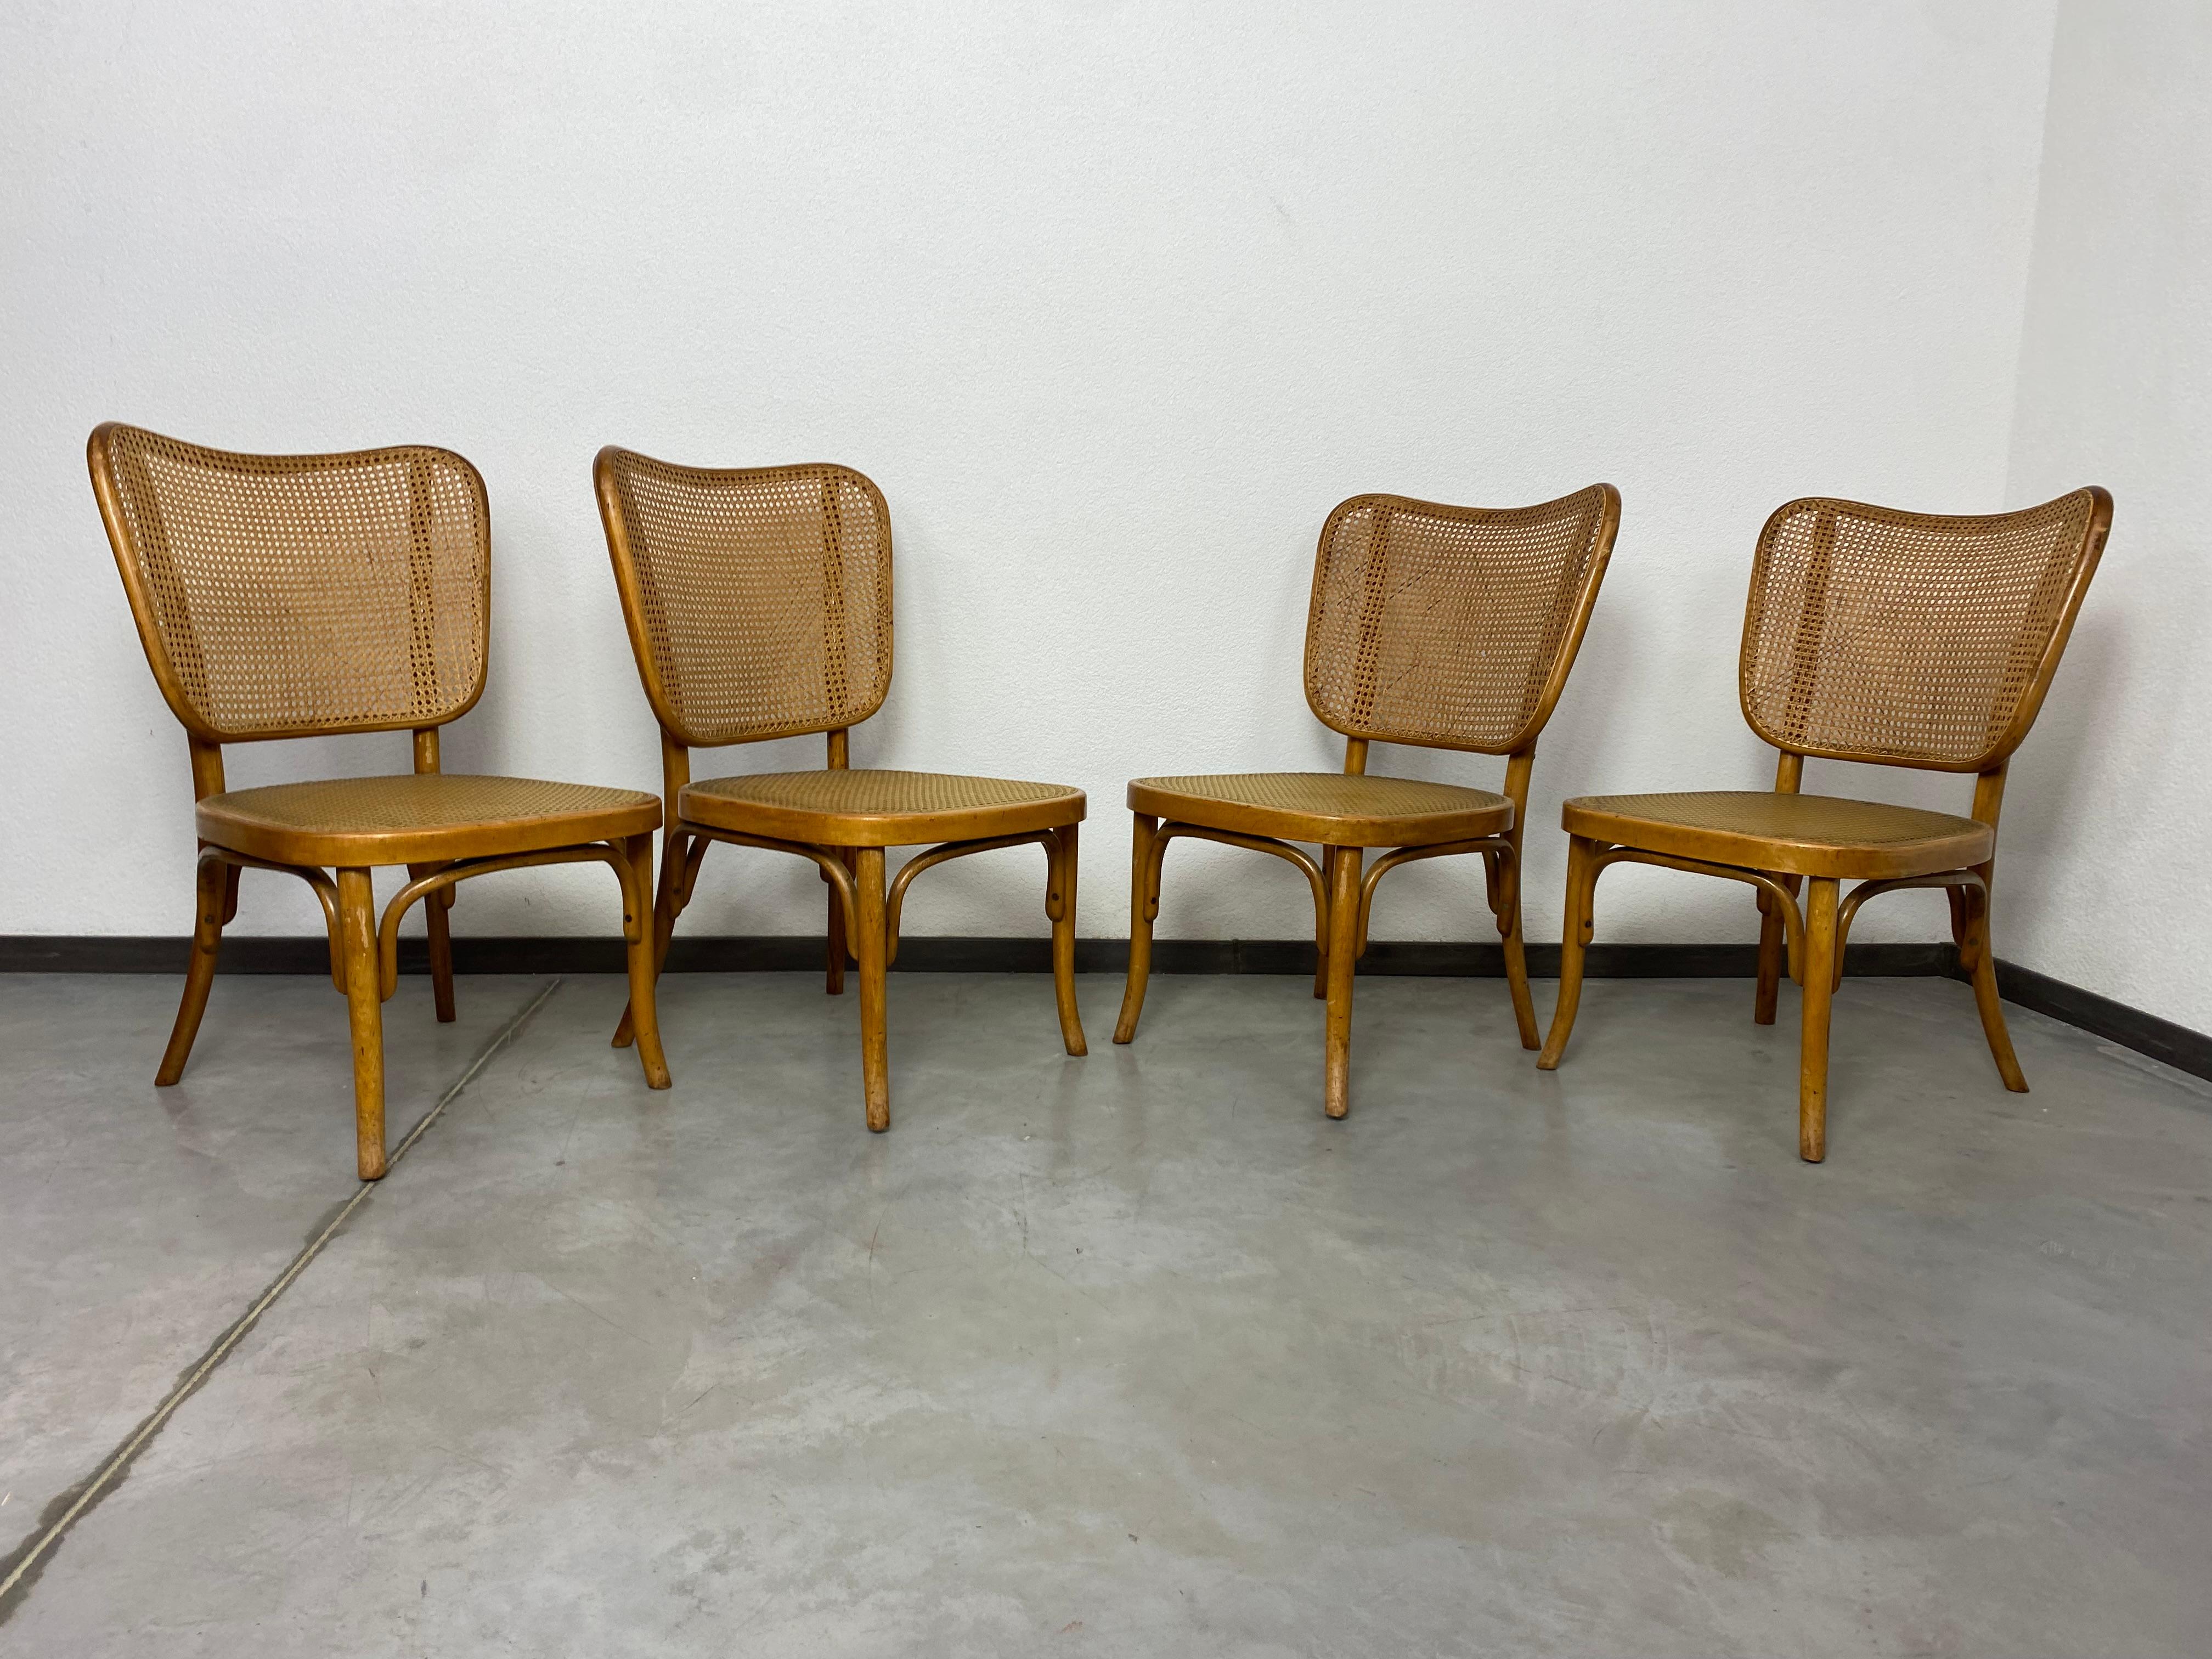 Ensemble de 4 chaises modèle A821 par Adolf Gustav Schneck pour Thonet-Mundus. État absolument original, combinaison de tressage de rotin naturel sur le dossier et de tressage de caoutchouc sur l'assise.